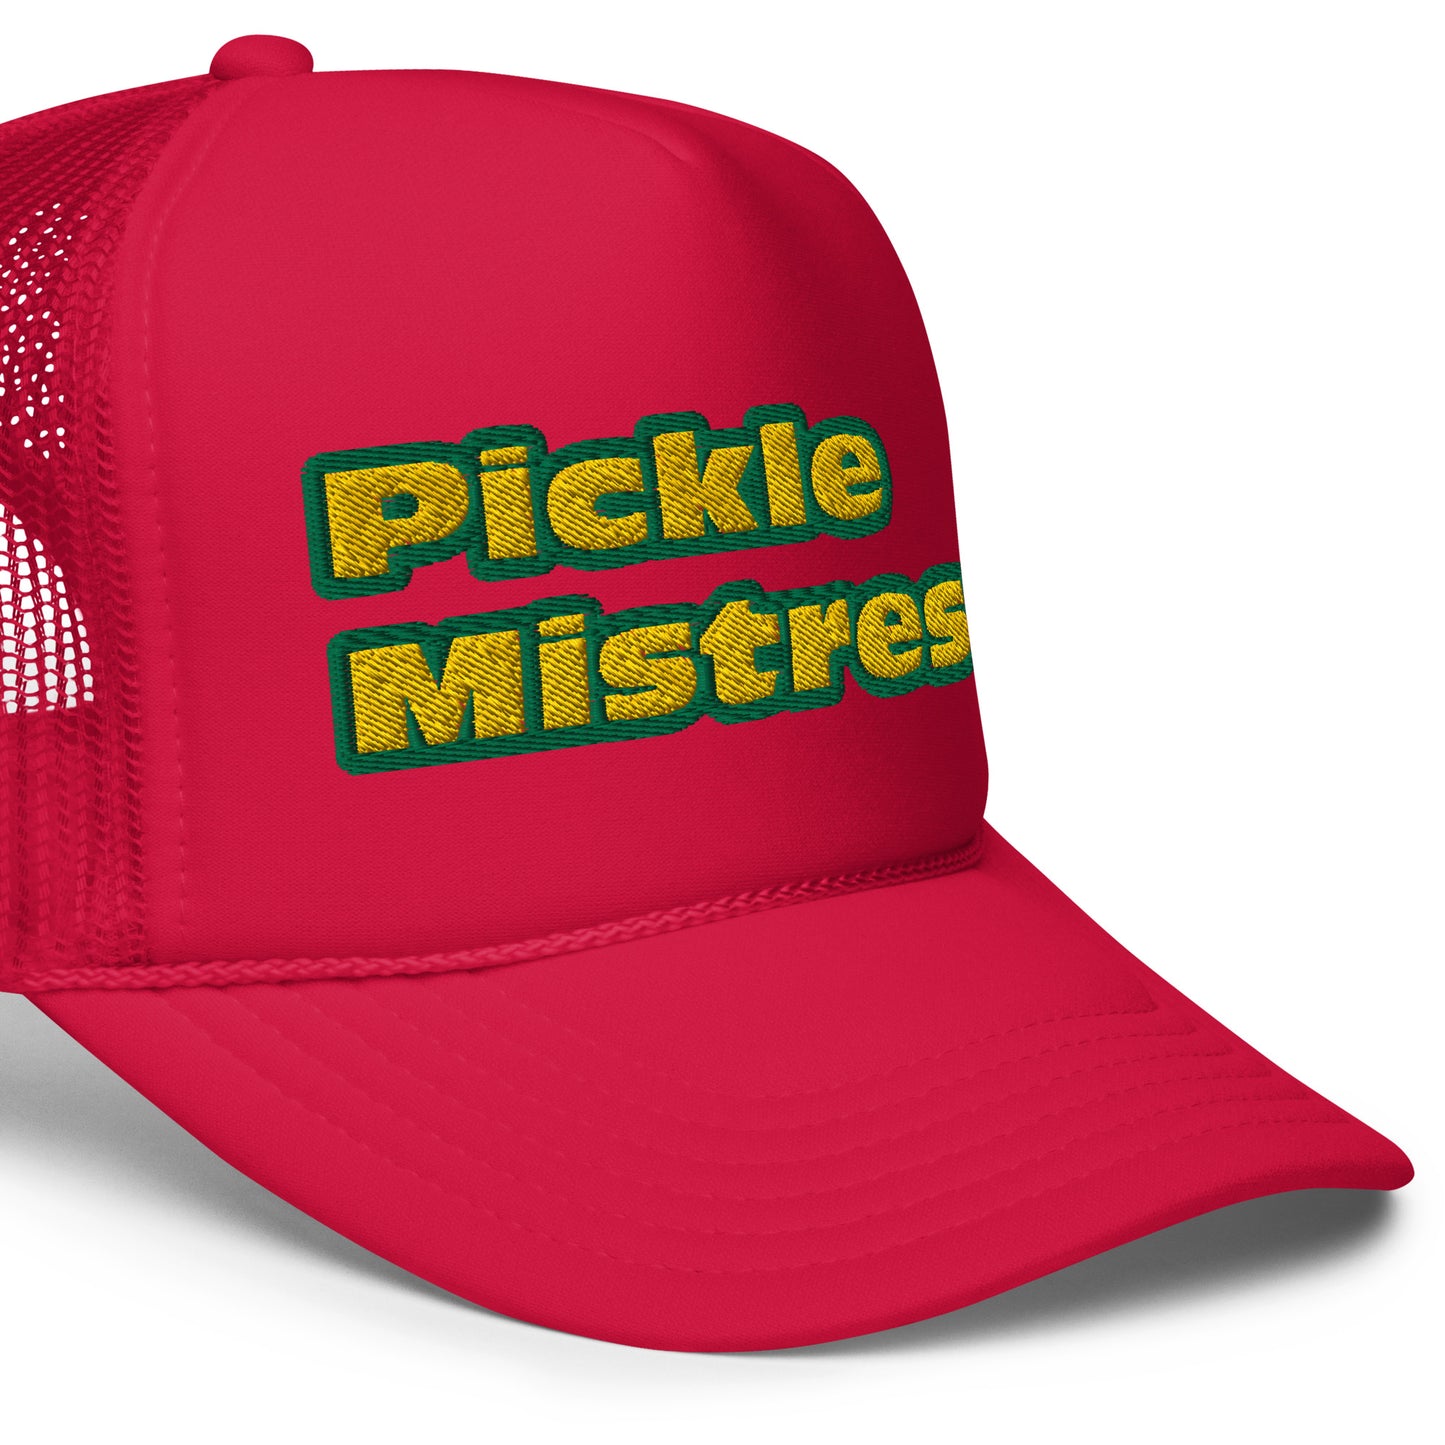 Pickle Mistress Trucker Hat